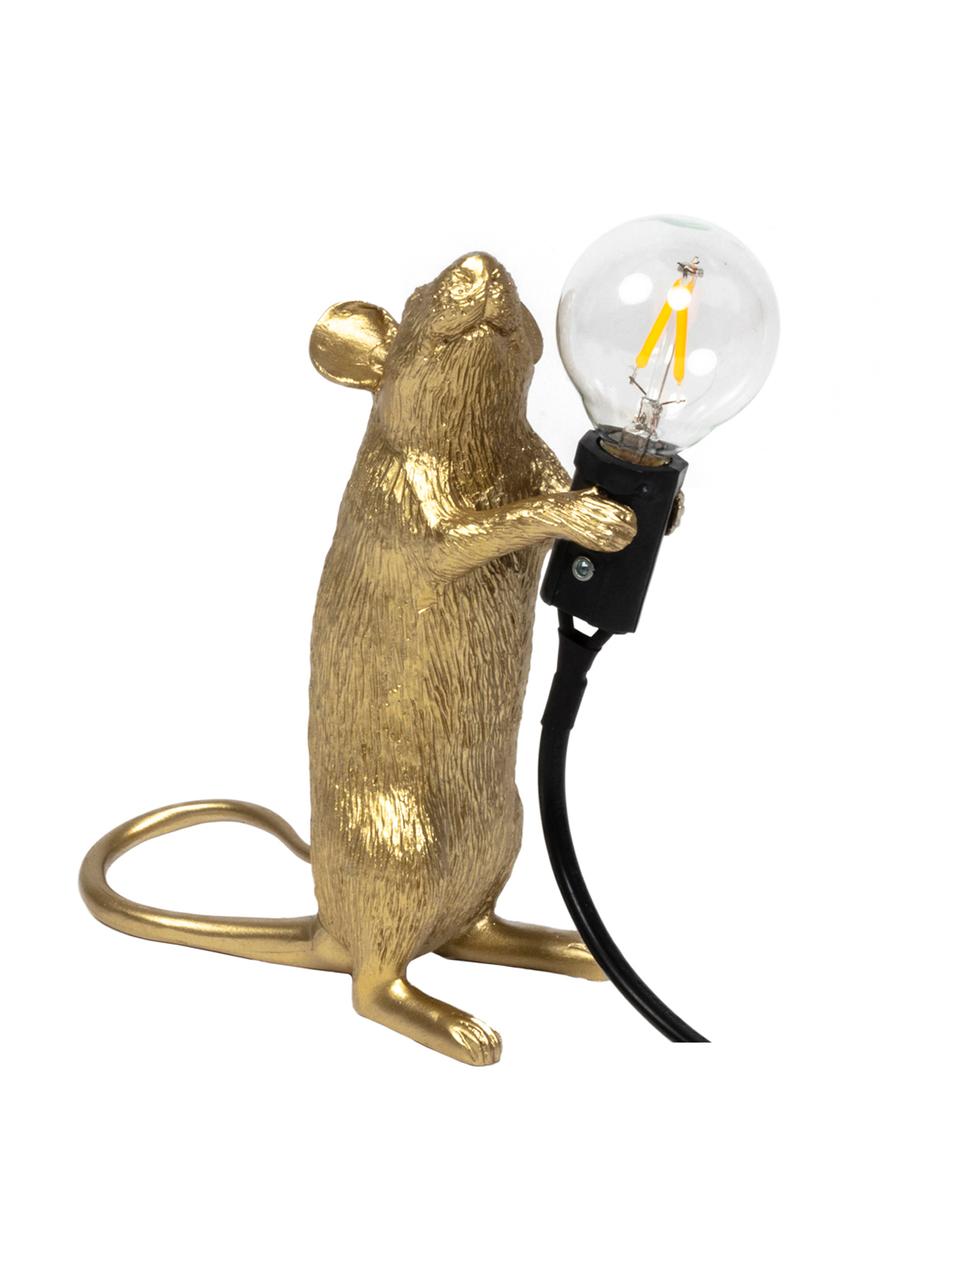 Kleine Design Tischlampe Mouse, Goldfarben, 6 x 15 cm